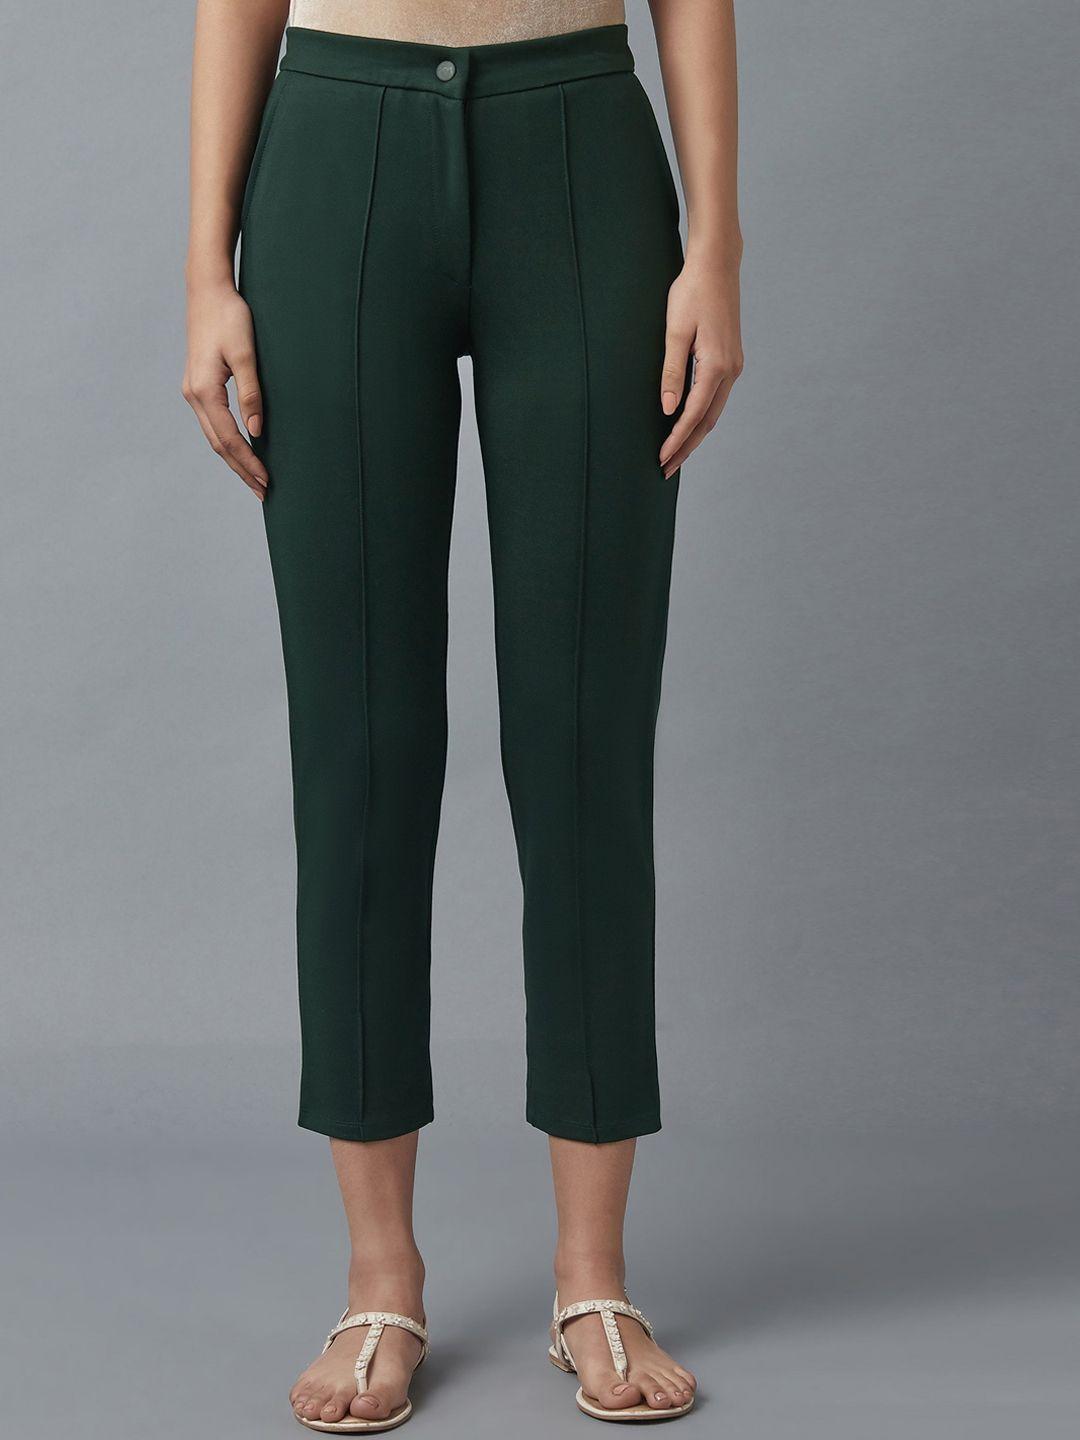 elleven women green trousers